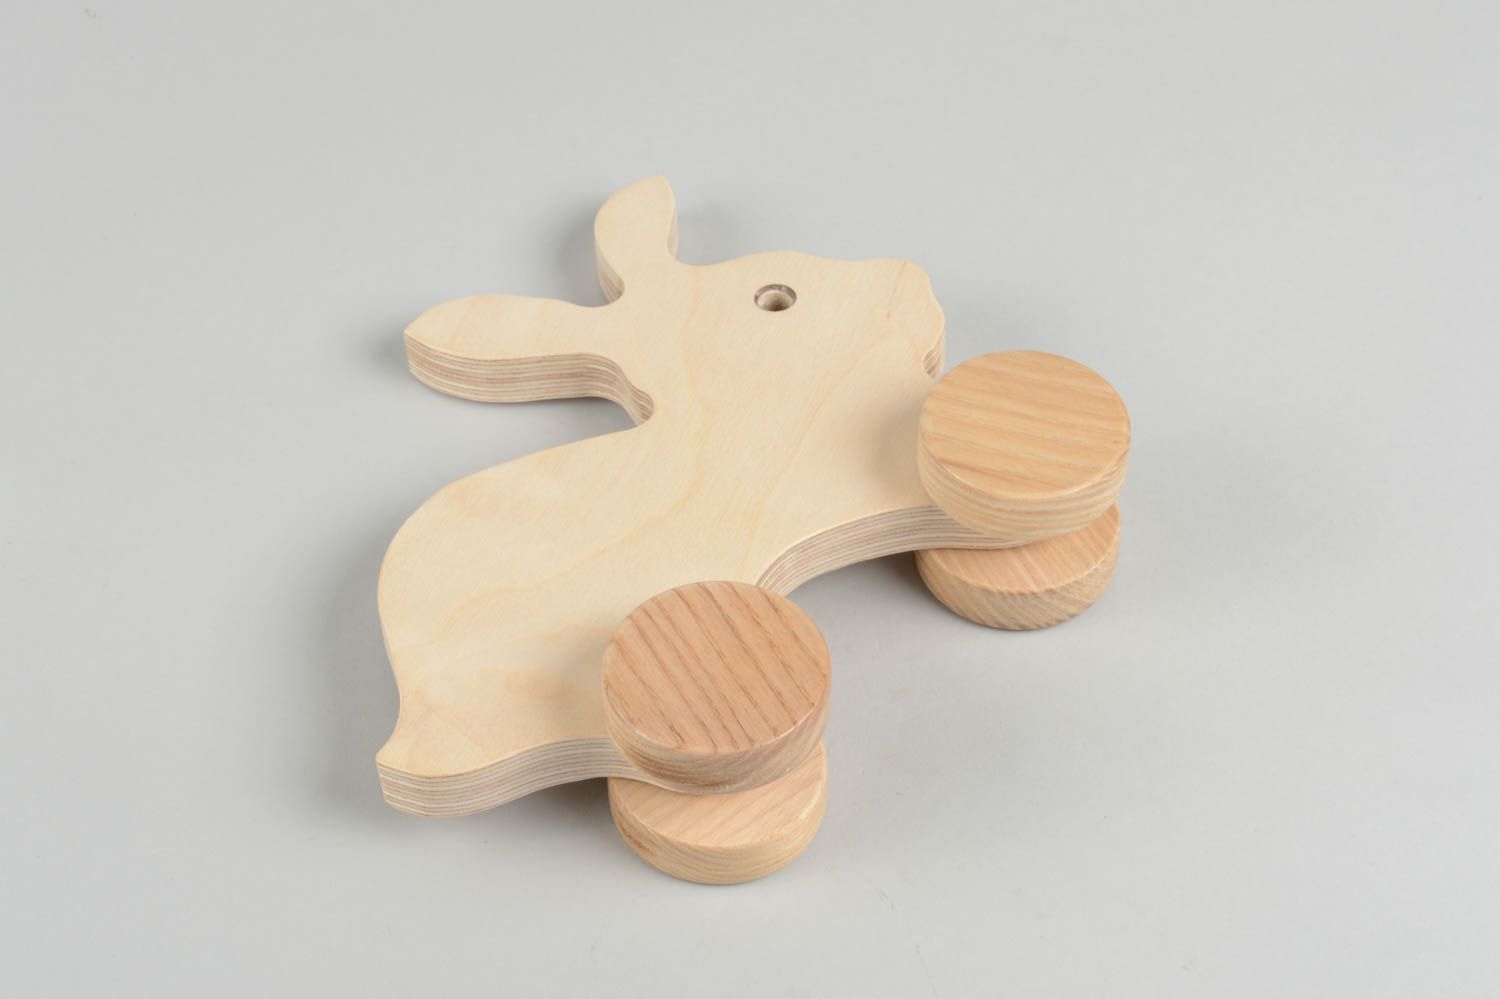 Замечательная игрушка ручной работы игрушка каталка Заяц игрушка из дерева фото 3